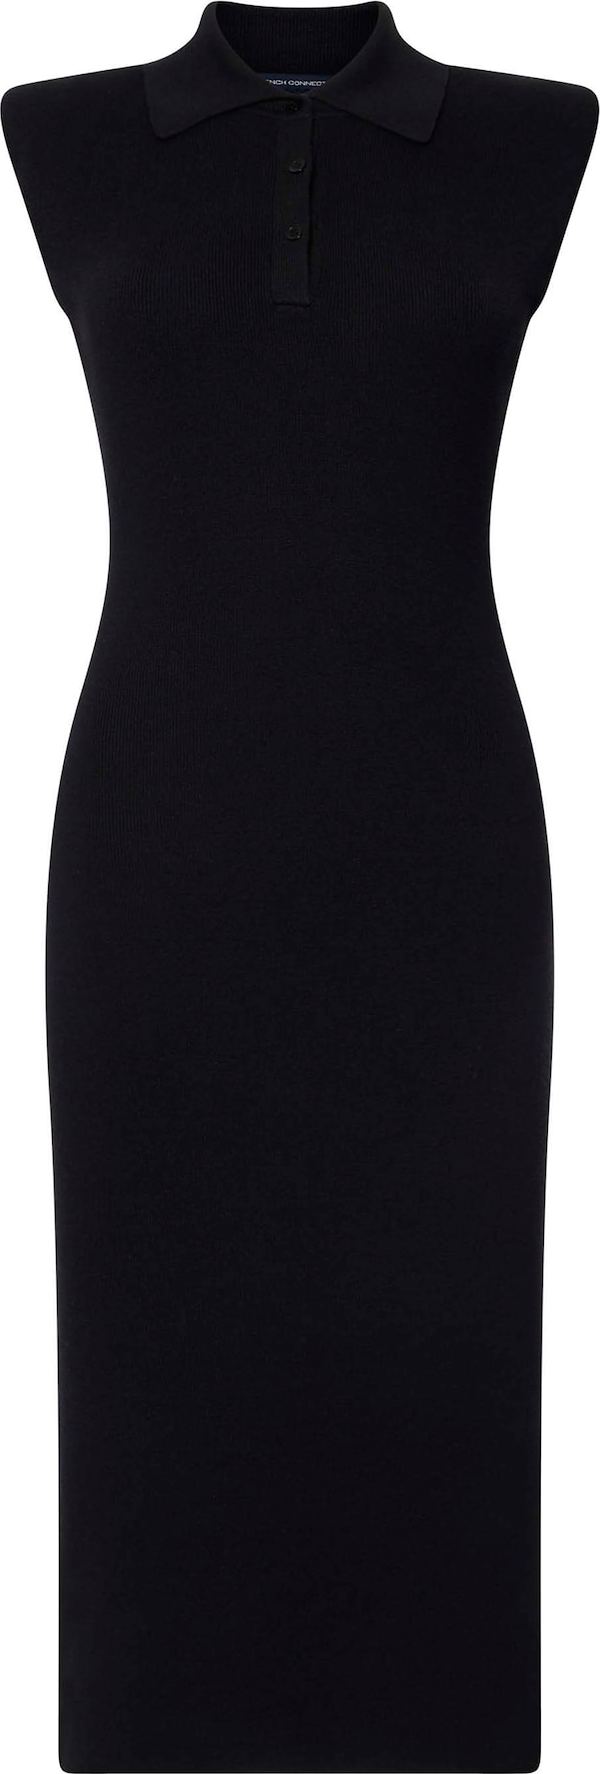 FRENCH CONNECTION Úpletové šaty 'Katie' černá